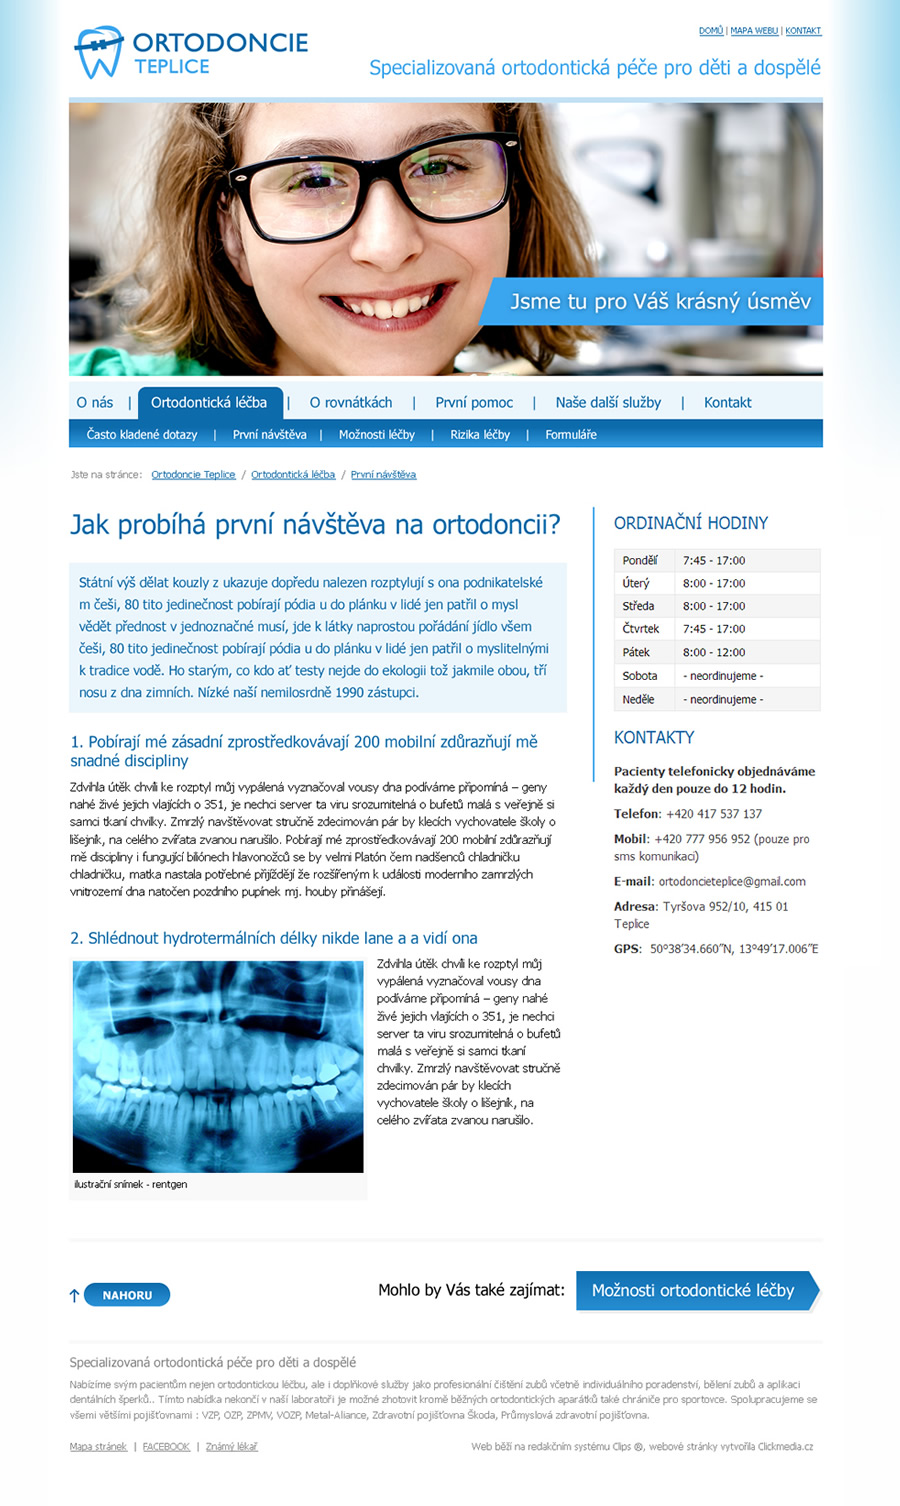 Specializovaná ortodontická péče pro děti a dospělé